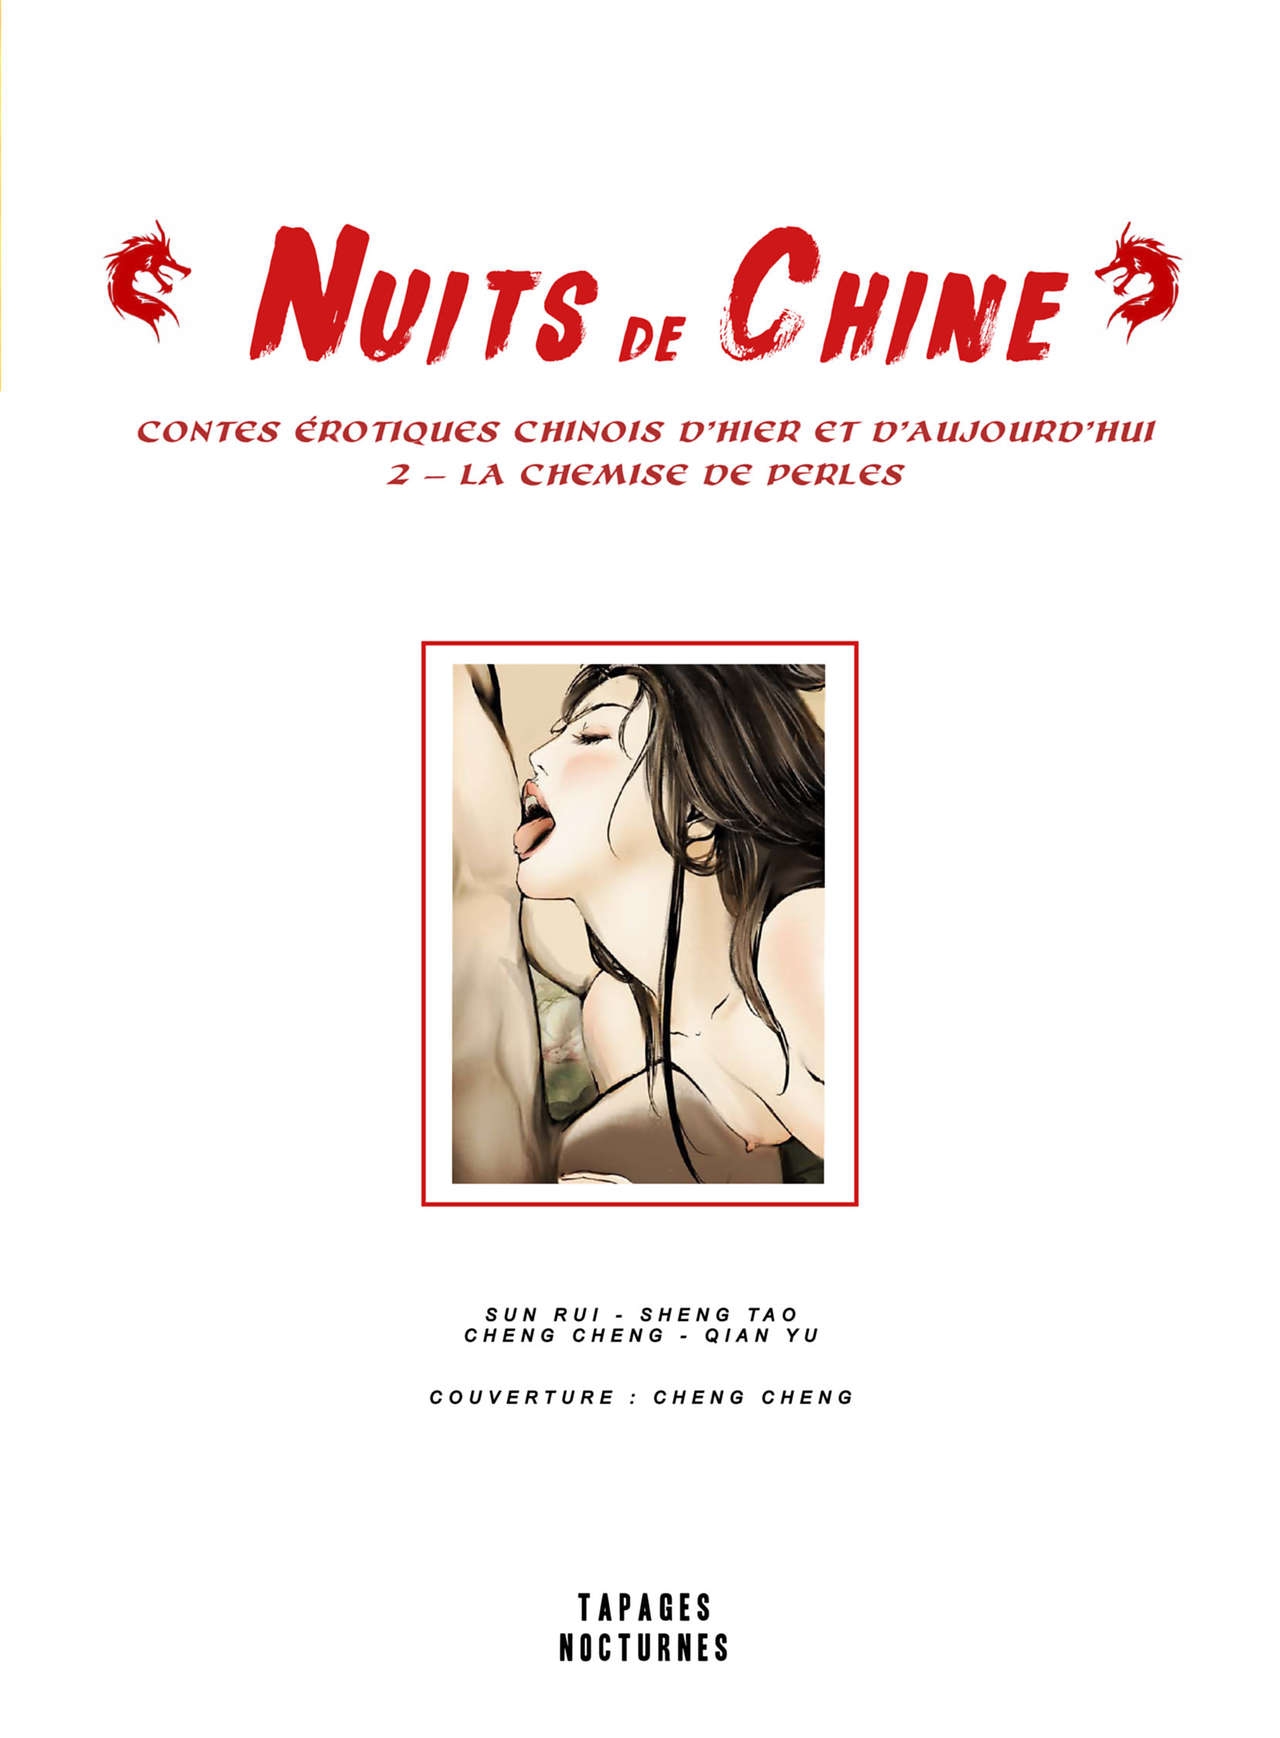 [Sun Rui-Sheng Tao-Cheng Cheng-Qian Yu] NUITS DE CHINE - 02 La Chemise de Perles [french] 1